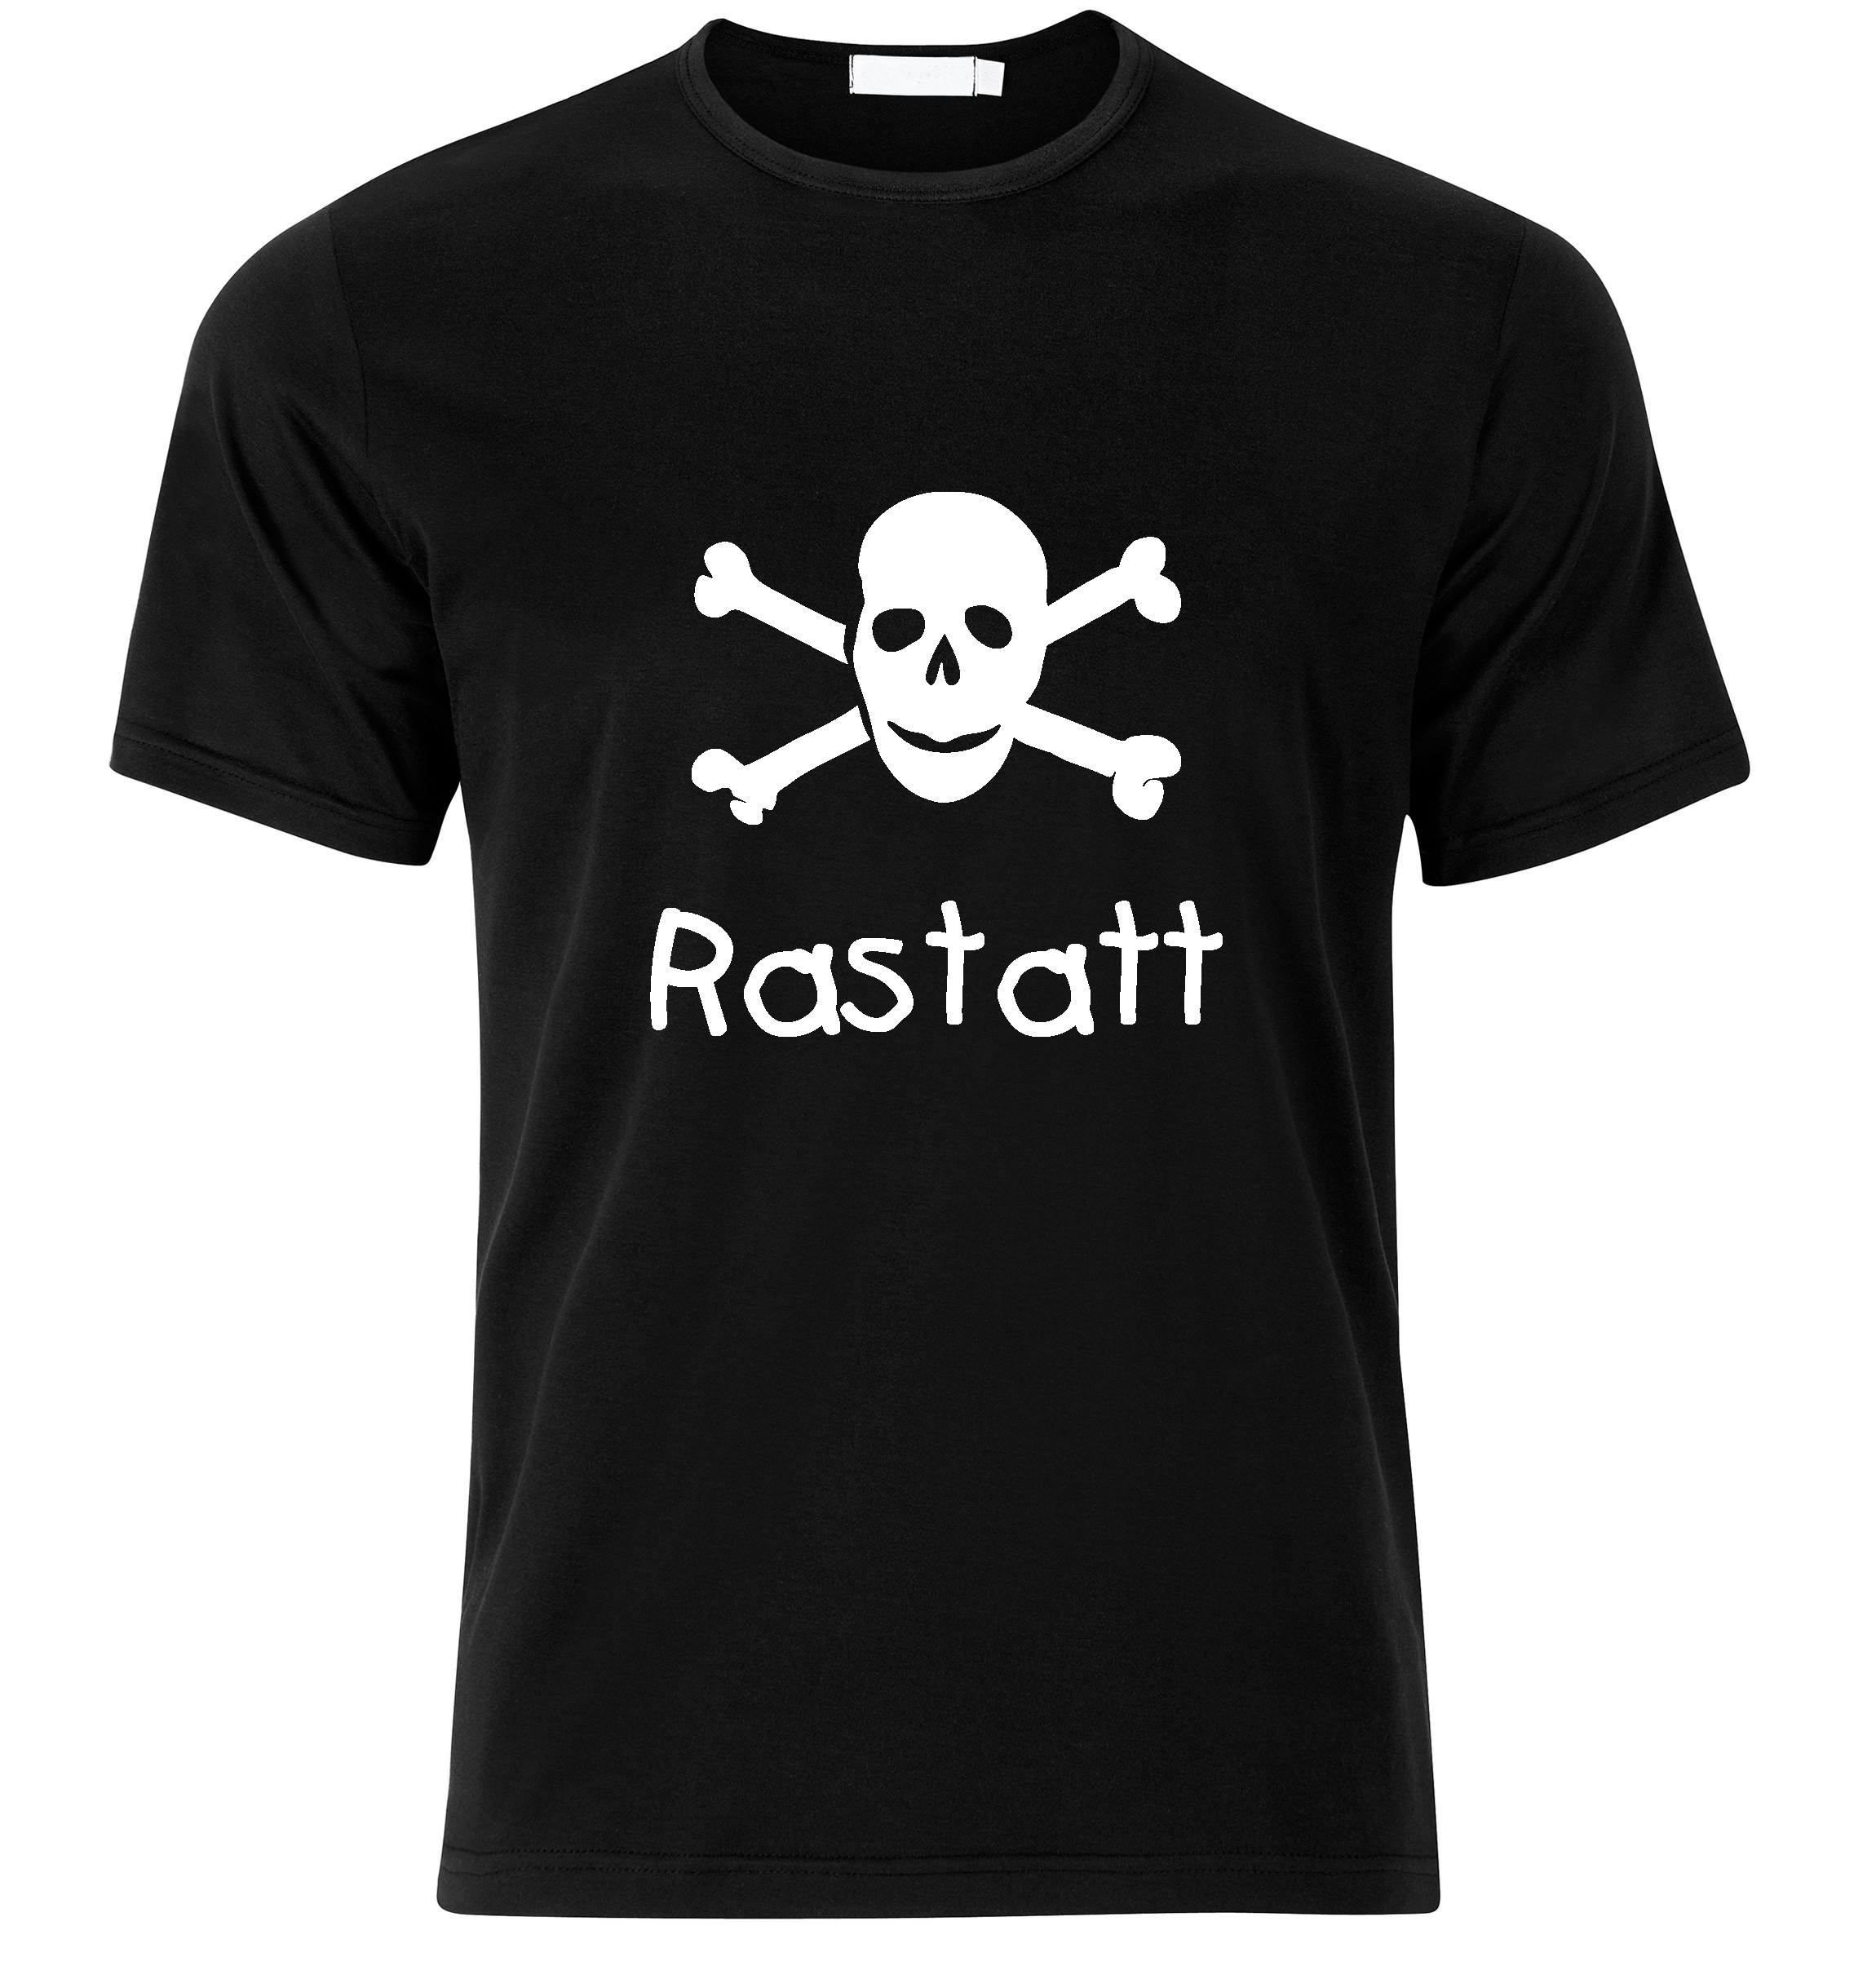 T-Shirt Rastatt Jolly Roger, Totenkopf